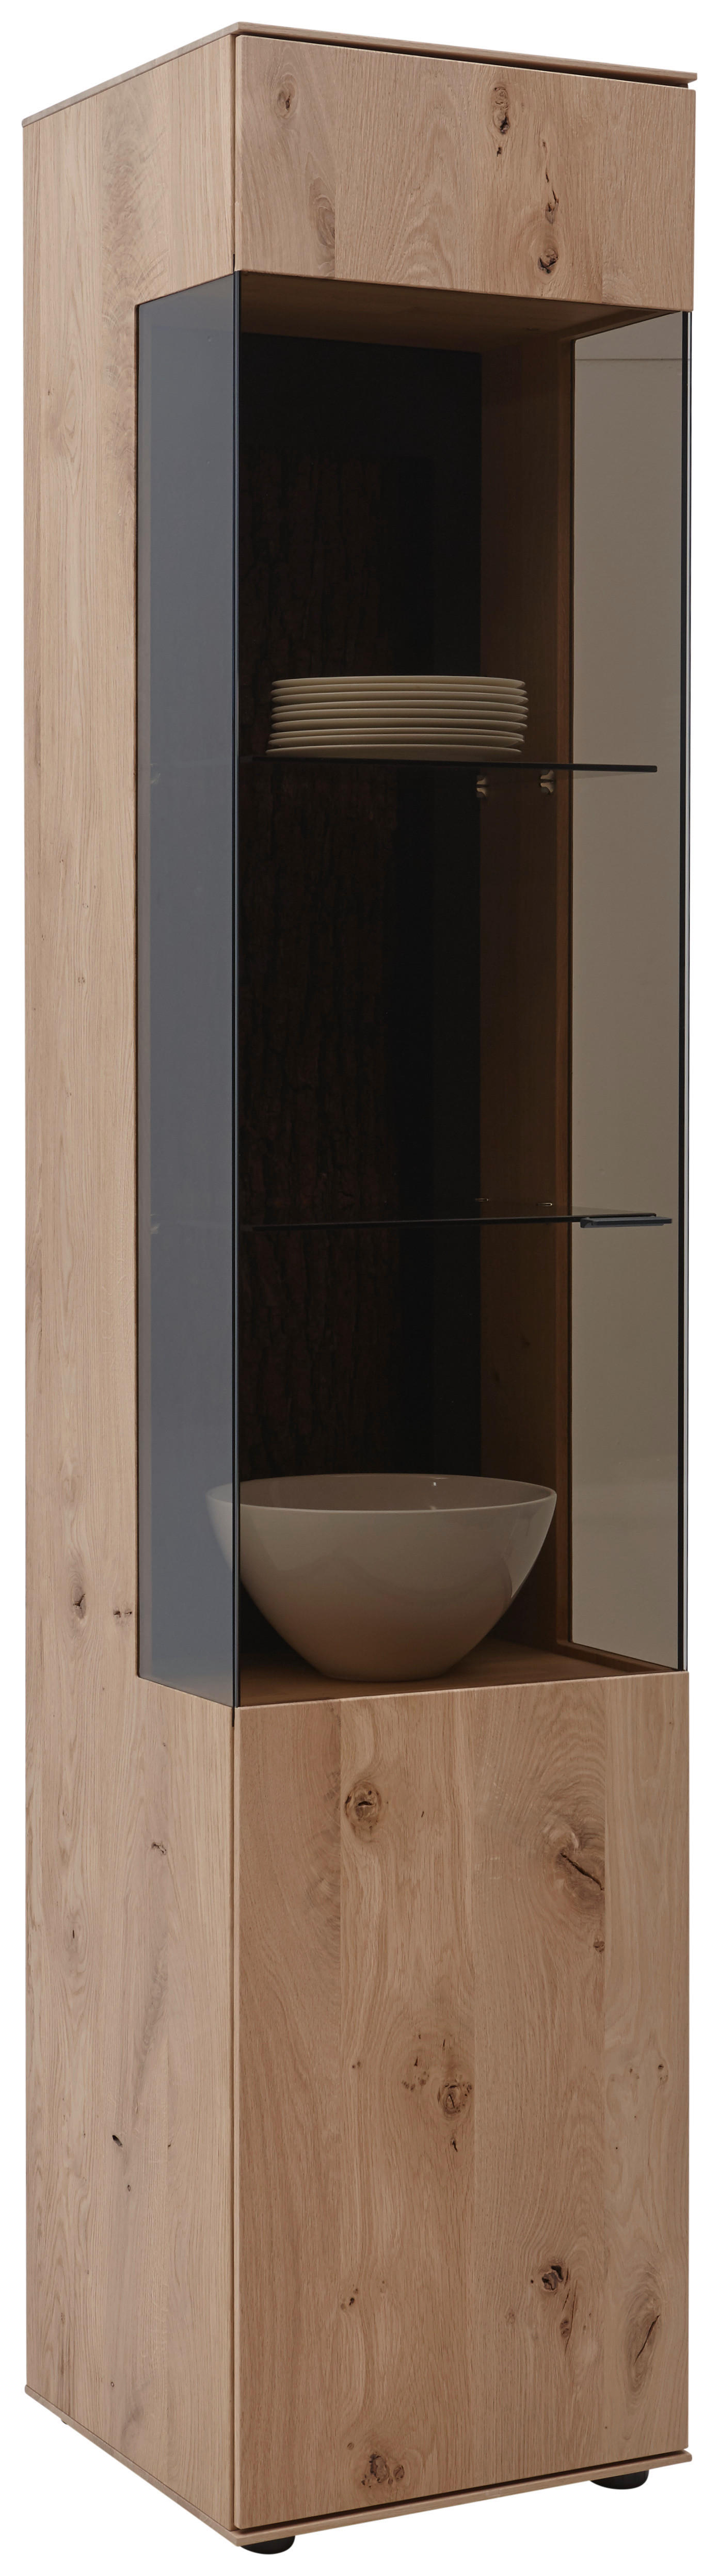 VITRINE Kerneiche vollmassiv Eichefarben  - Eichefarben/Anthrazit, Design, Glas/Holz (43/205/44cm) - Valnatura